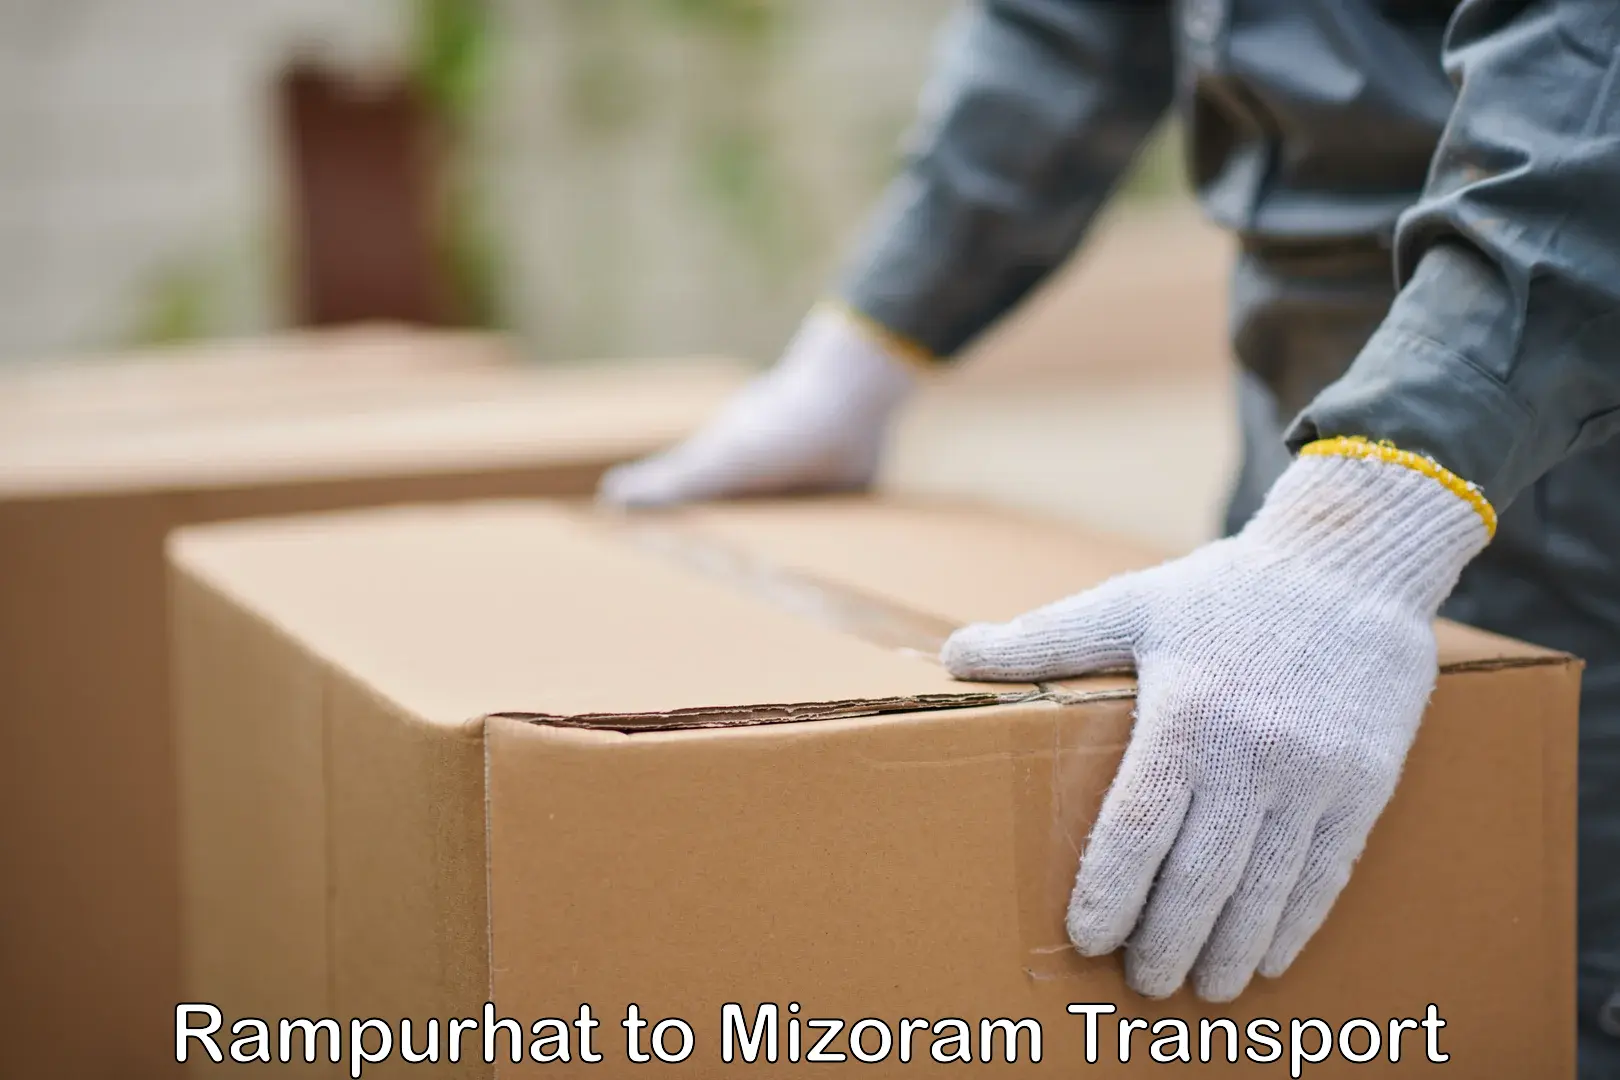 Transport in sharing Rampurhat to Mizoram